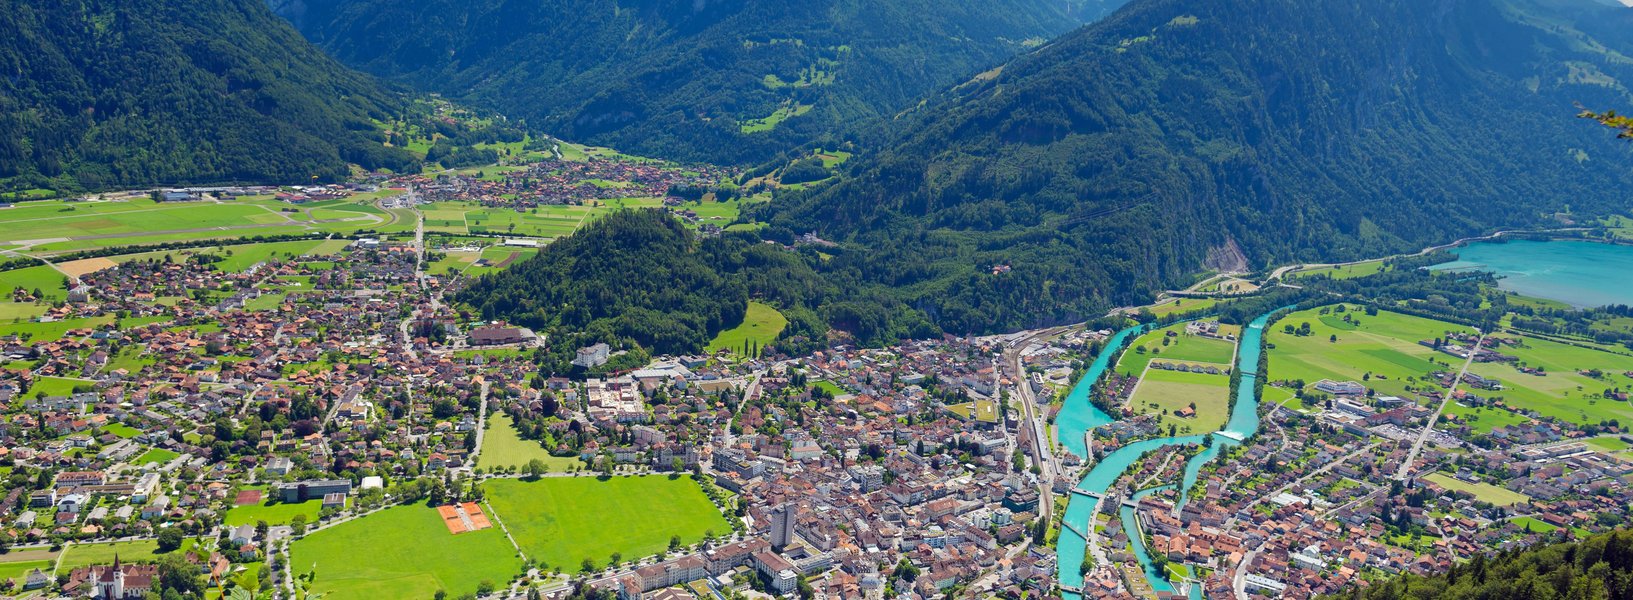 Mitten im Berner Oberland für 35 bis 65 Jährige